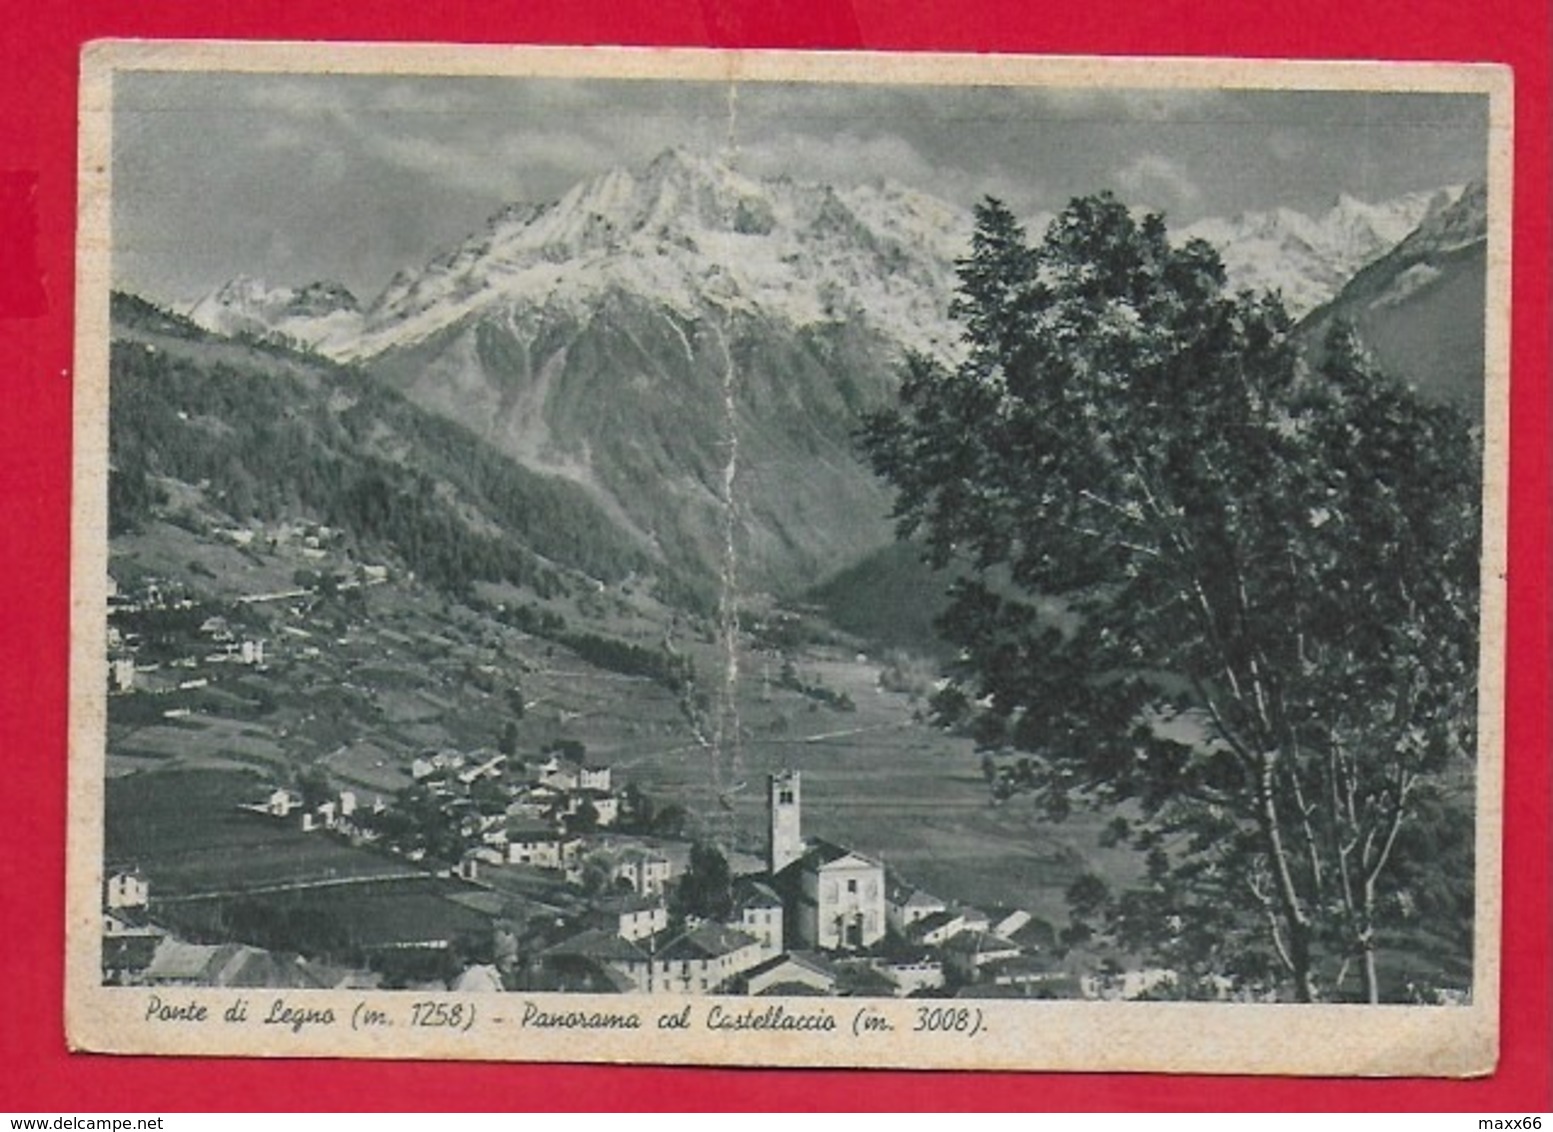 CARTOLINA VG ITALIA - PONTE DI LEGNO (BS) - Panorama Col Castellaccio - 10 X 15 - 1948 - Brescia